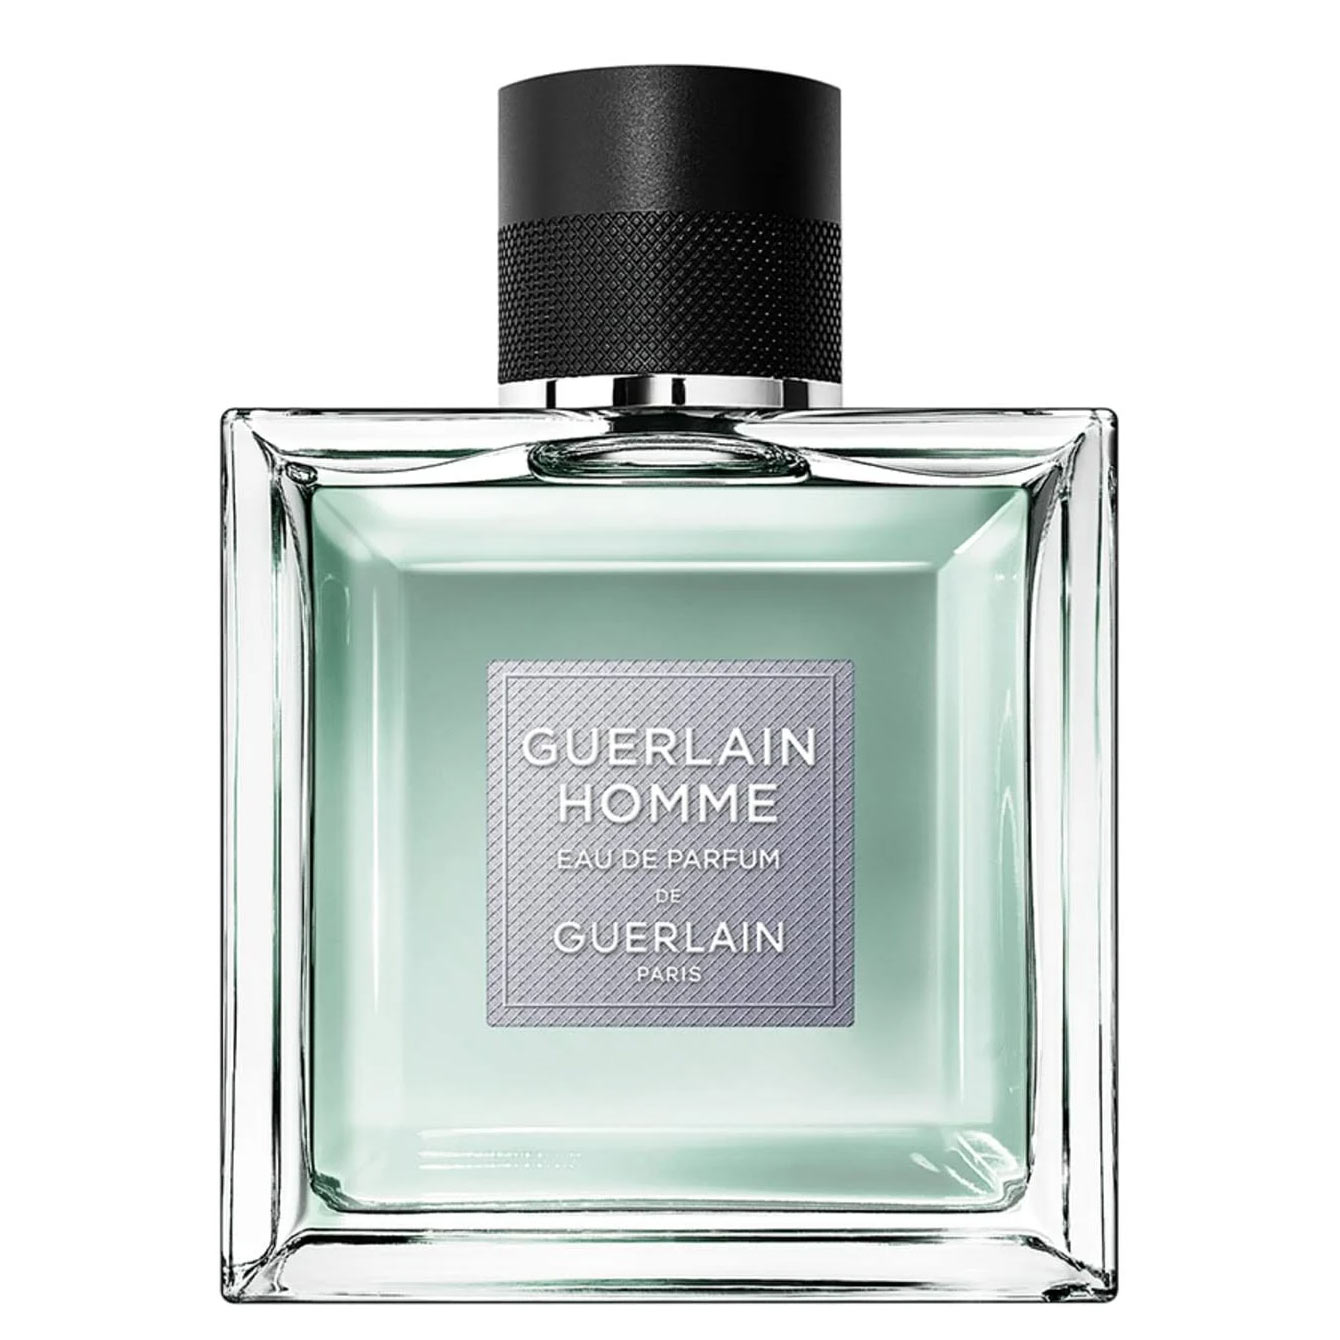 Guerlain-Homme-Eau-de-Parfum-Guerlain